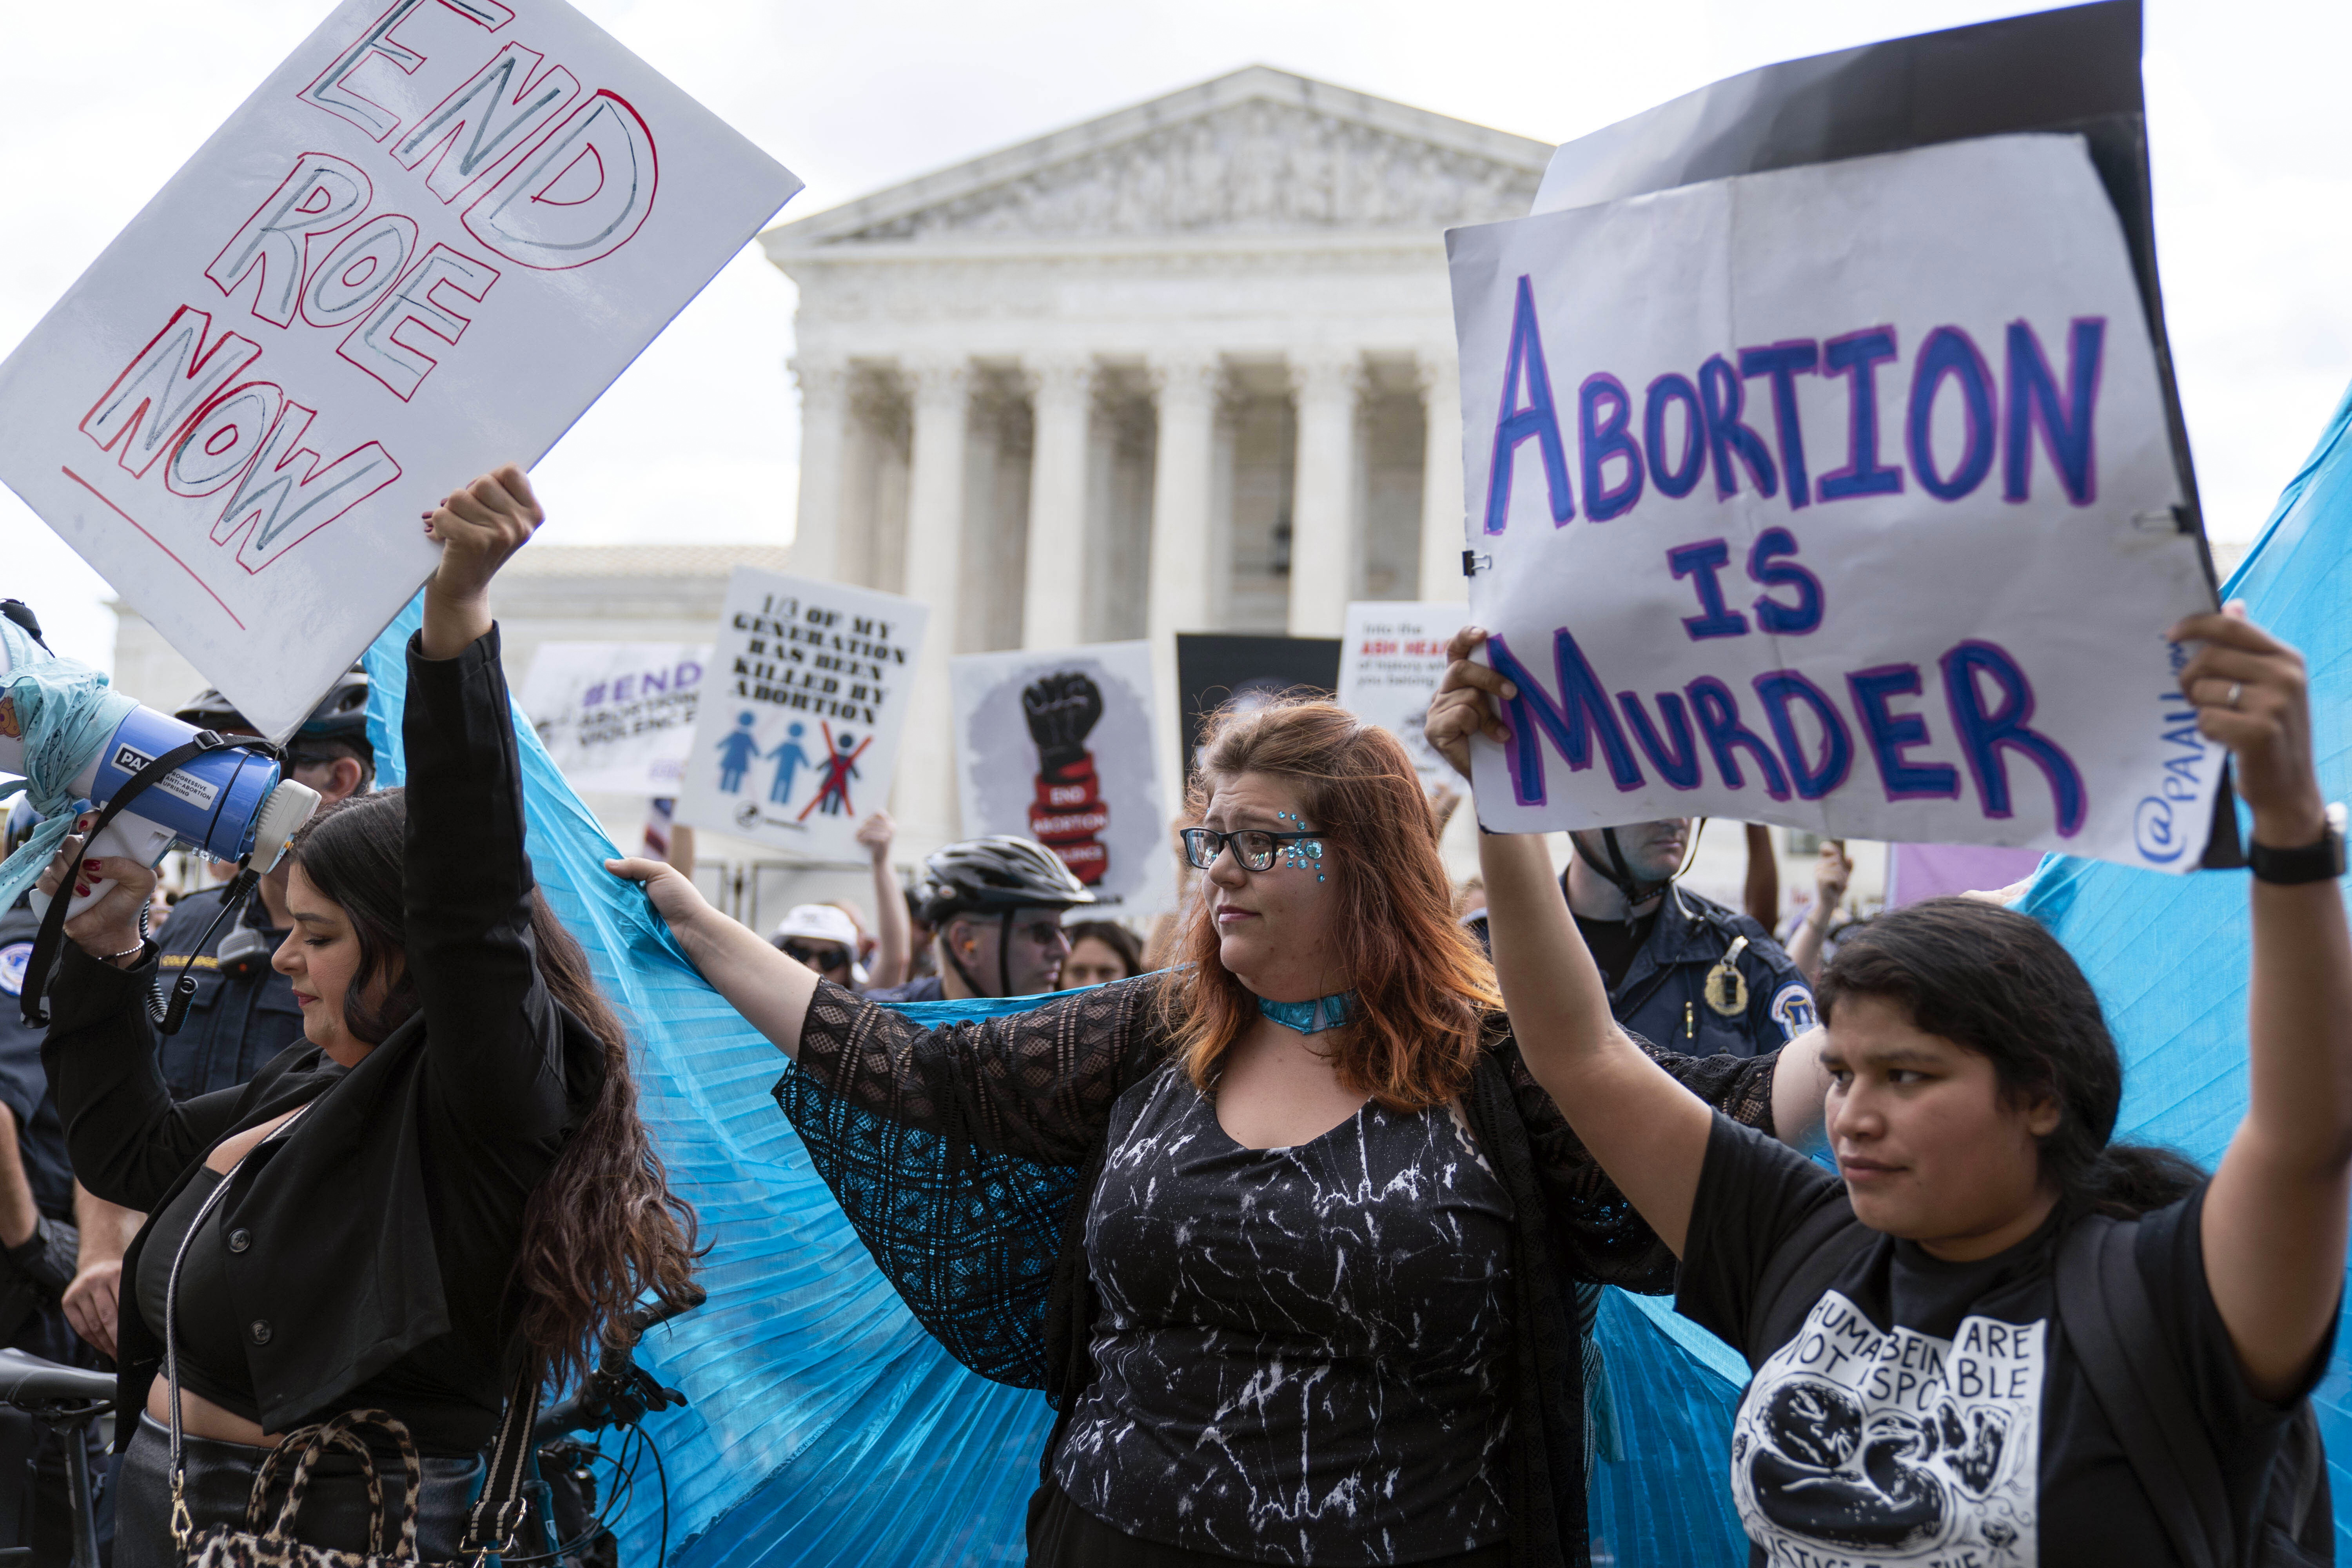 Decizia din SUA privind avortul pune în pericol căsătoriile gay şi alte libertăţi. Avertismentele judecătorilor liberali de la Curtea Supremă